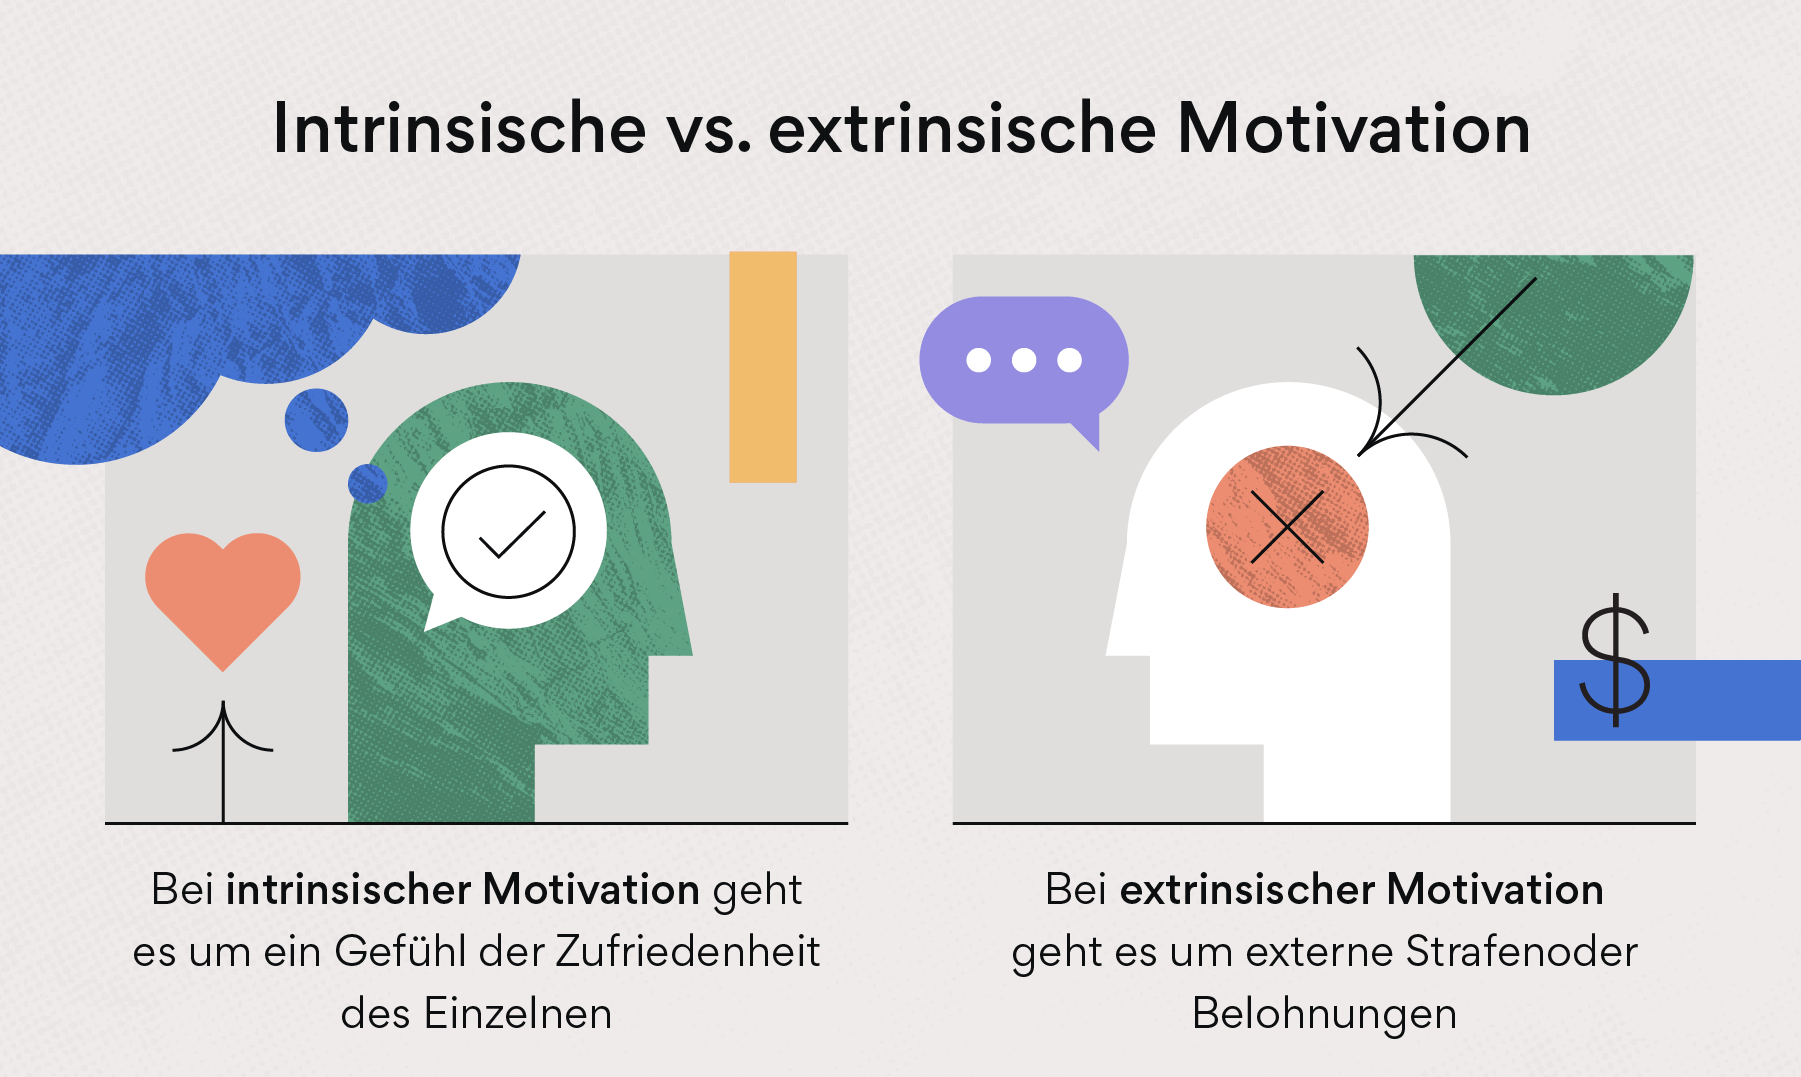 Intrinsische Motivation vs. extrinsische Motivation